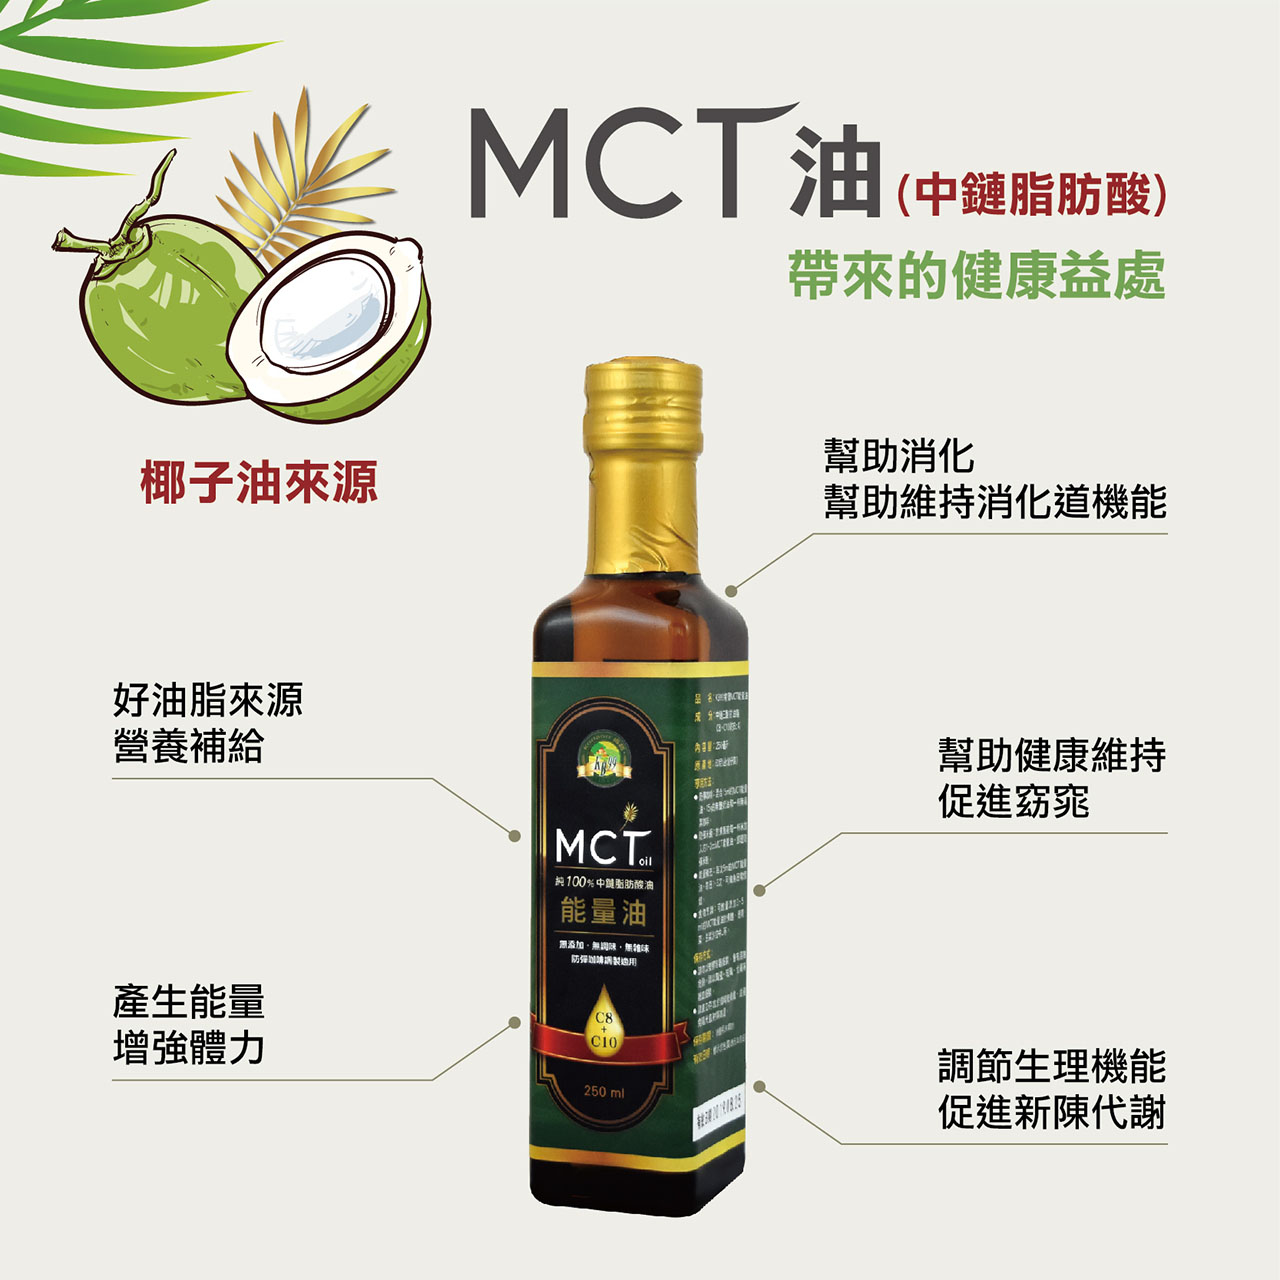 【肯寶KB99】MCT能量油250ml  椰子油來源C8+C10 防彈飲食